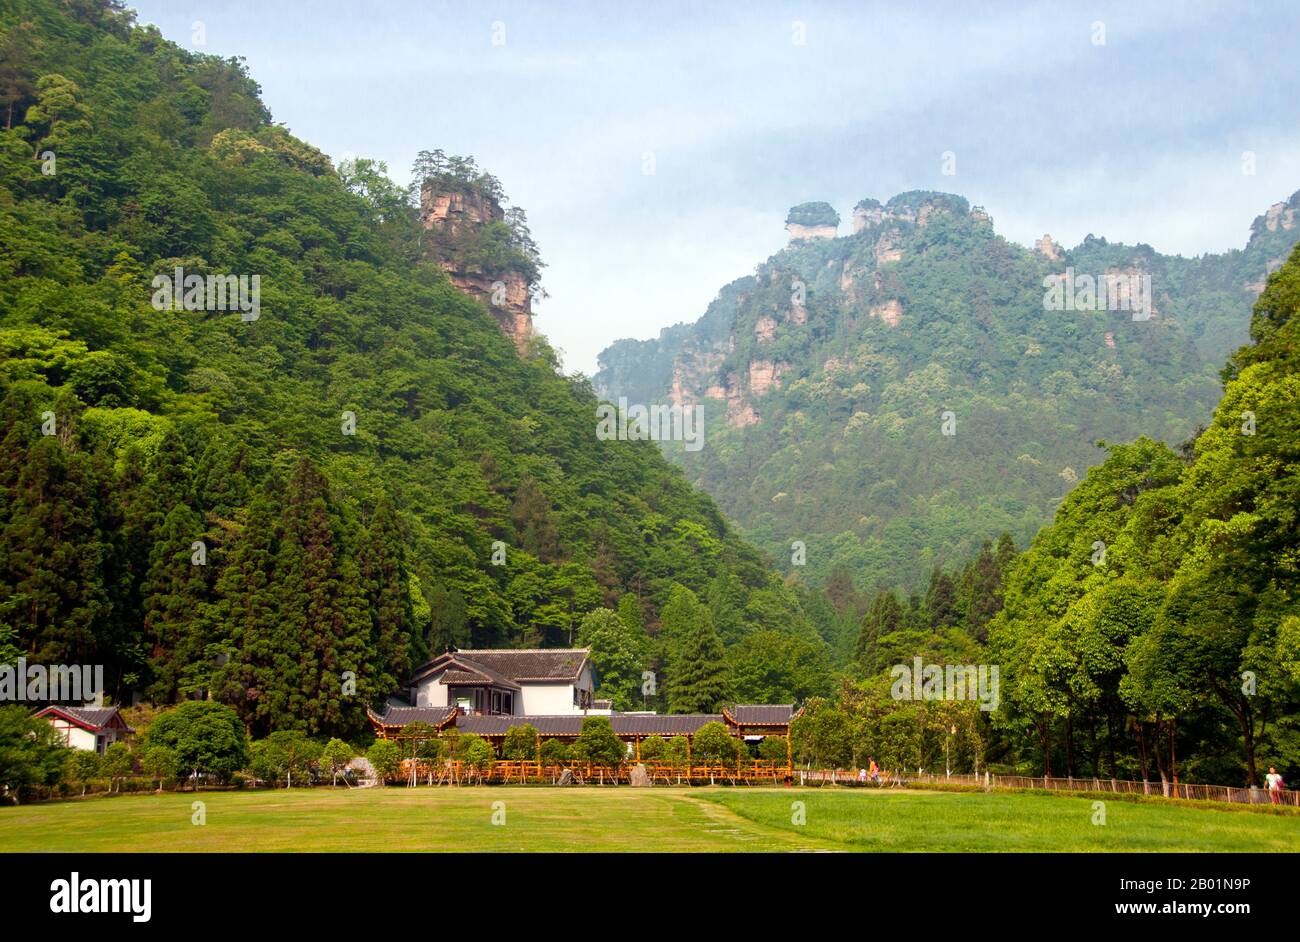 China: Eingang in Wulingyuan Scenic Area (Zhangjiajie), Provinz Hunan. Das Wulingyuan Scenic Reserve ist ein landschaftlich interessantes Gebiet in der Provinz Hunan. Er ist bekannt für seine etwa 3.100 hohen Quarzitsandsteinsäulen, von denen einige über 800 Meter (2.600 ft) hoch sind und eine Art Karstformation sind. 1992 wurde es zum UNESCO-Weltkulturerbe erklärt. Stockfoto